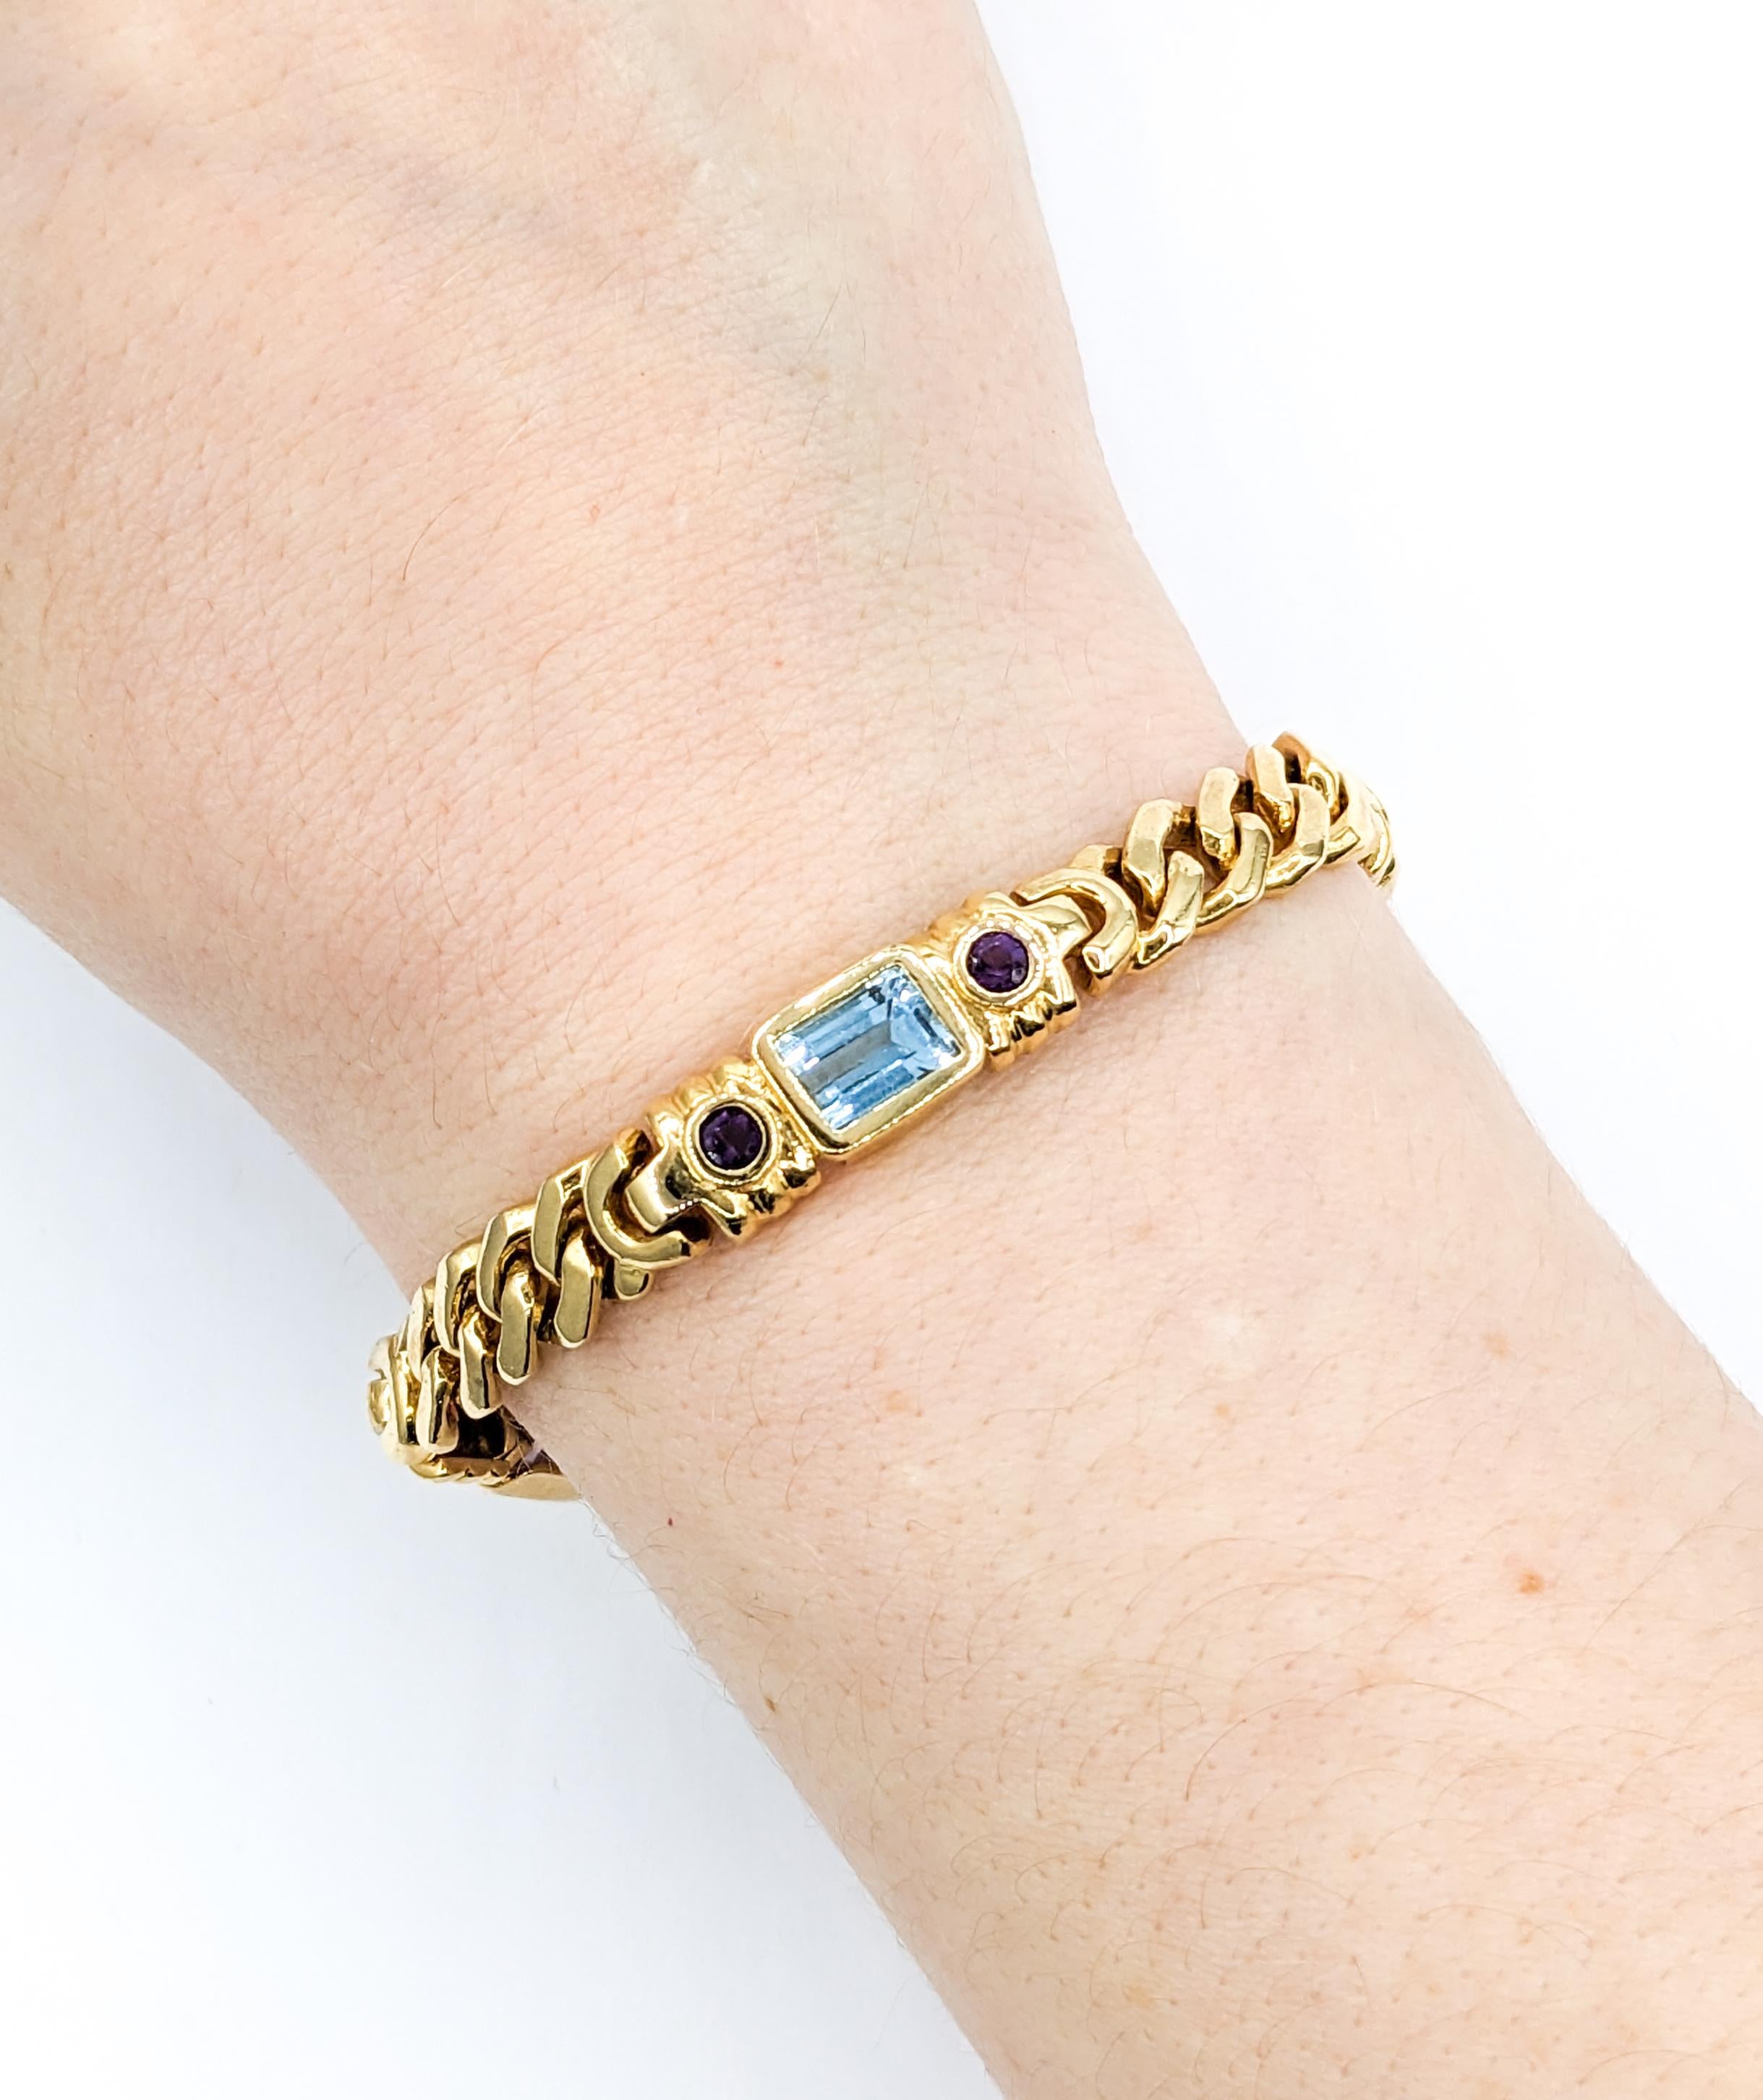 Mehrfarbiges Edelstein & 14K Gold Gliederarmband

Dieses elegante Armband ist aus 14-karätigem Gelbgold gefertigt und mit Granat, blauem Topas, Amethyst und Citrin verziert. Dieses Armband misst 7 1/2 Zoll in der Länge; das Gesamtgewicht beträgt